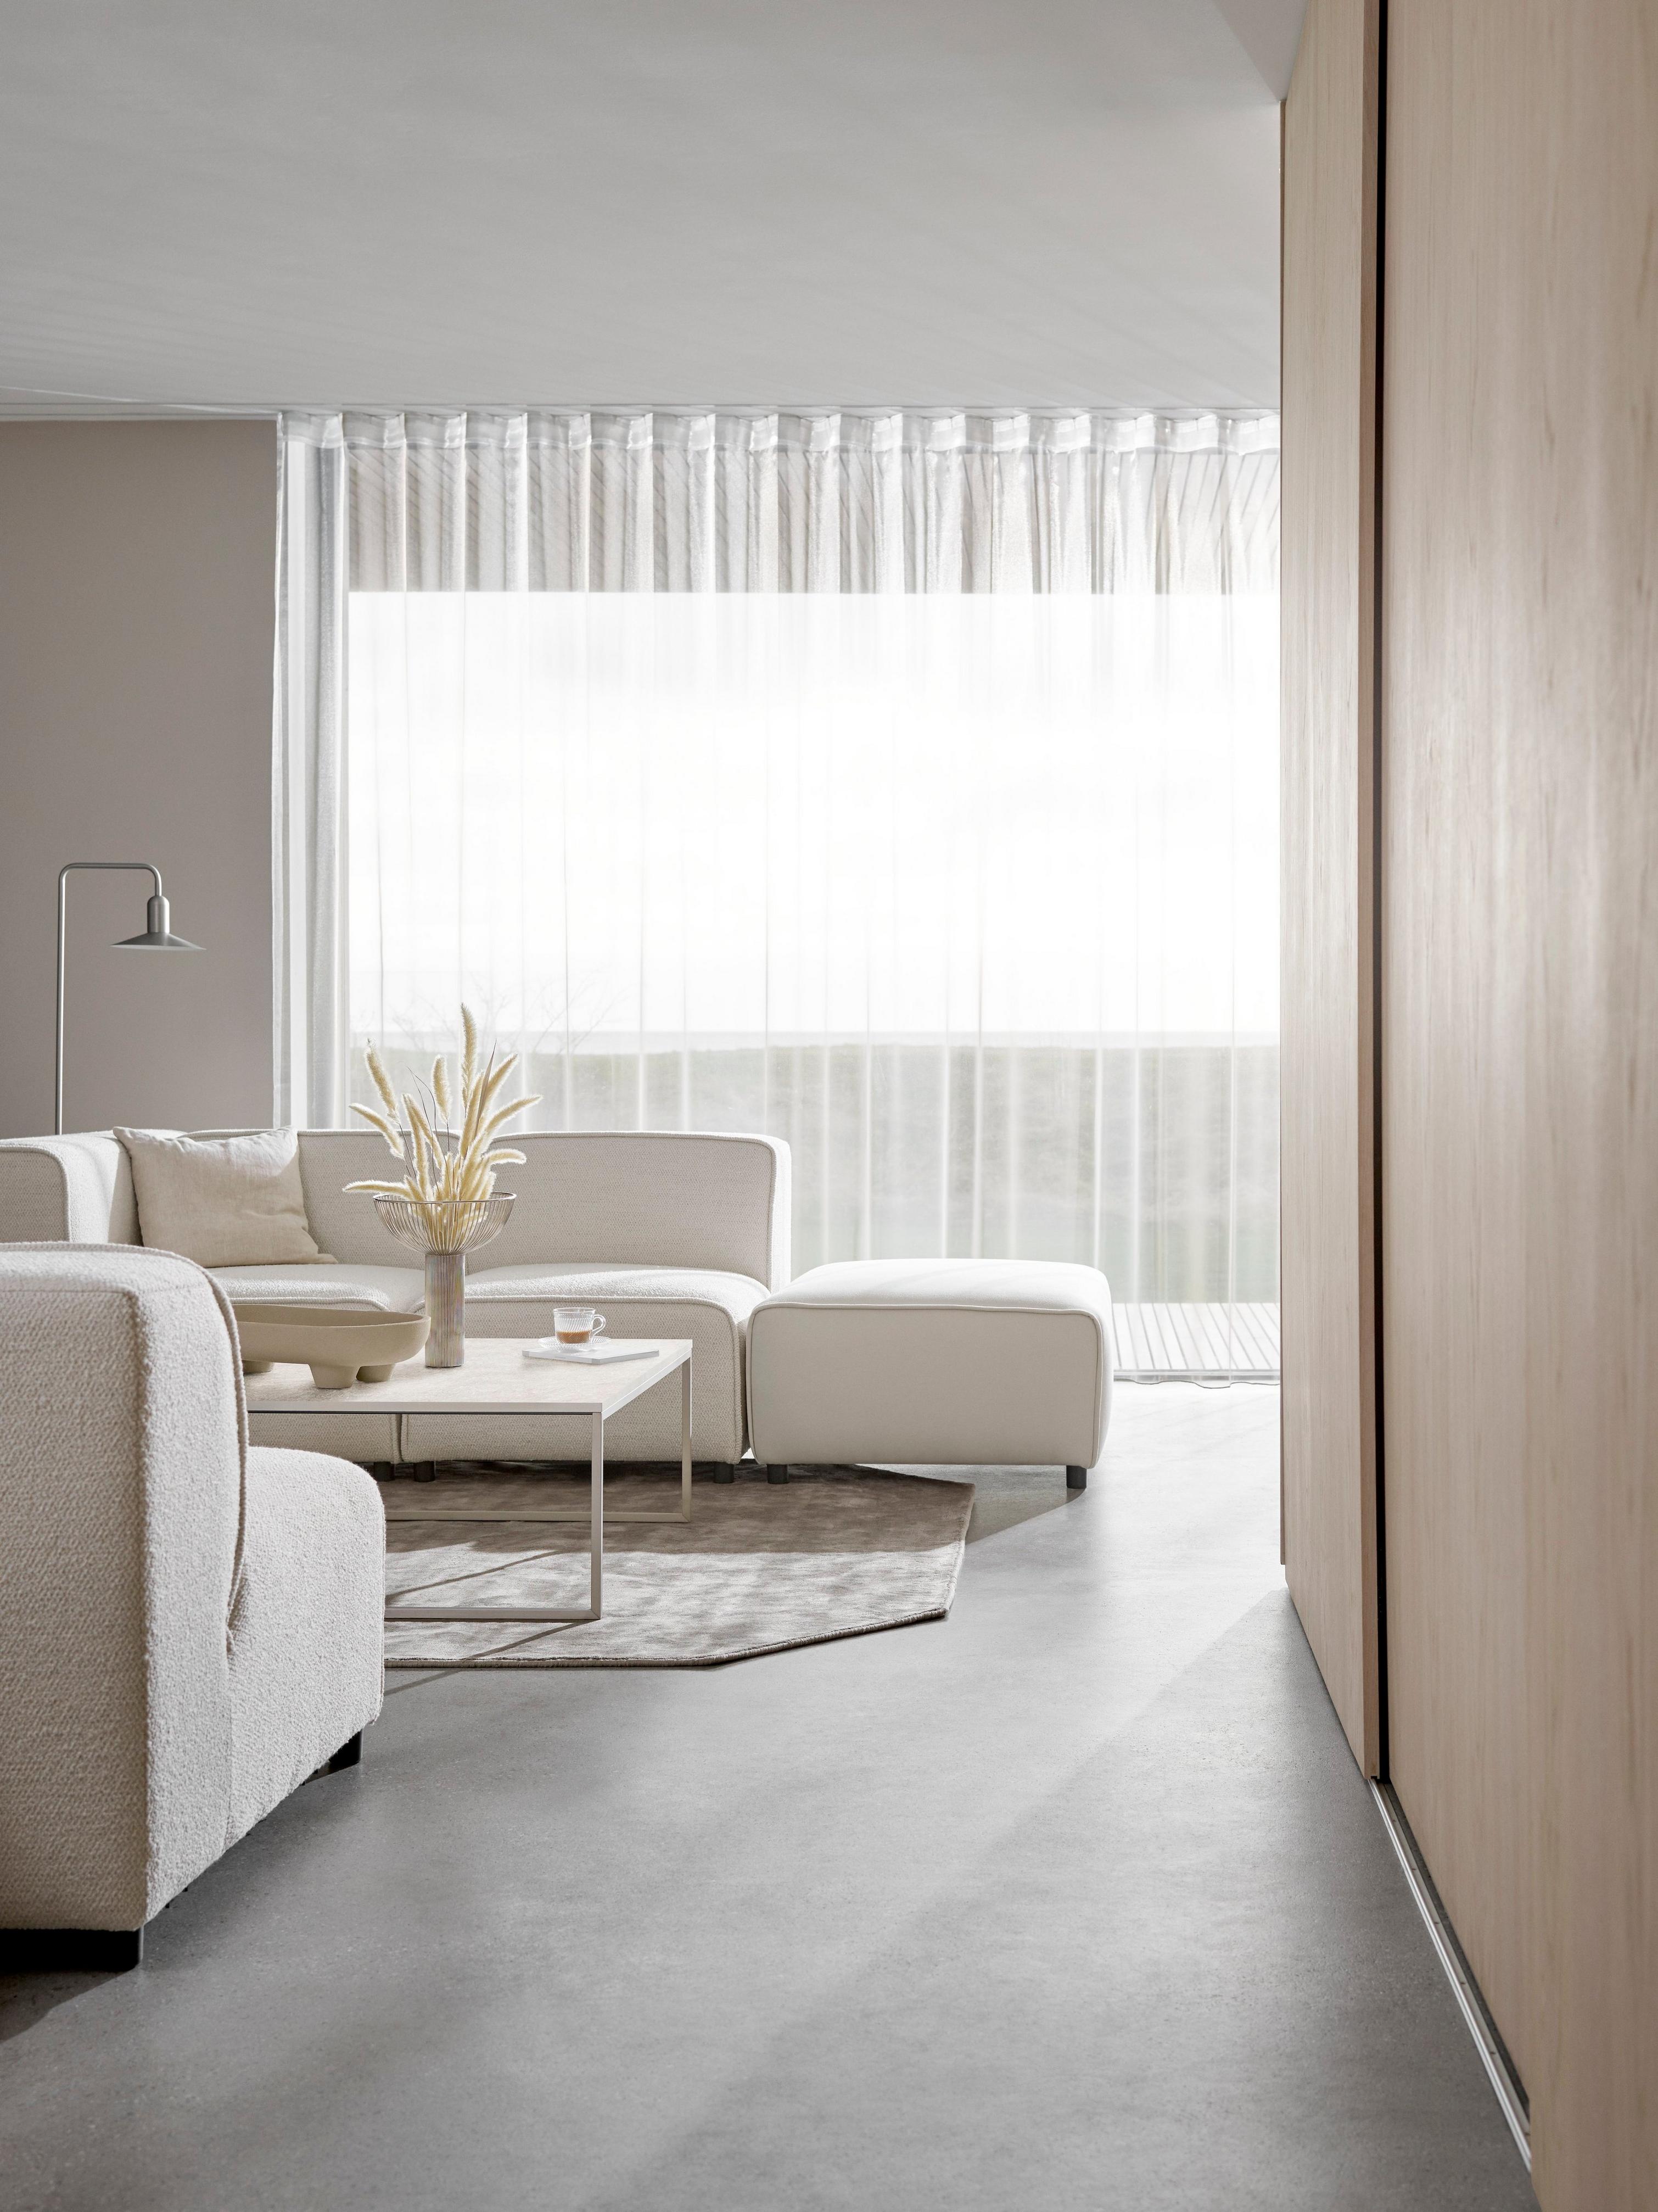 Диван Carmo кремового цвета в минималистичной гостиной с прозрачными шторами, рассеивающими свет.